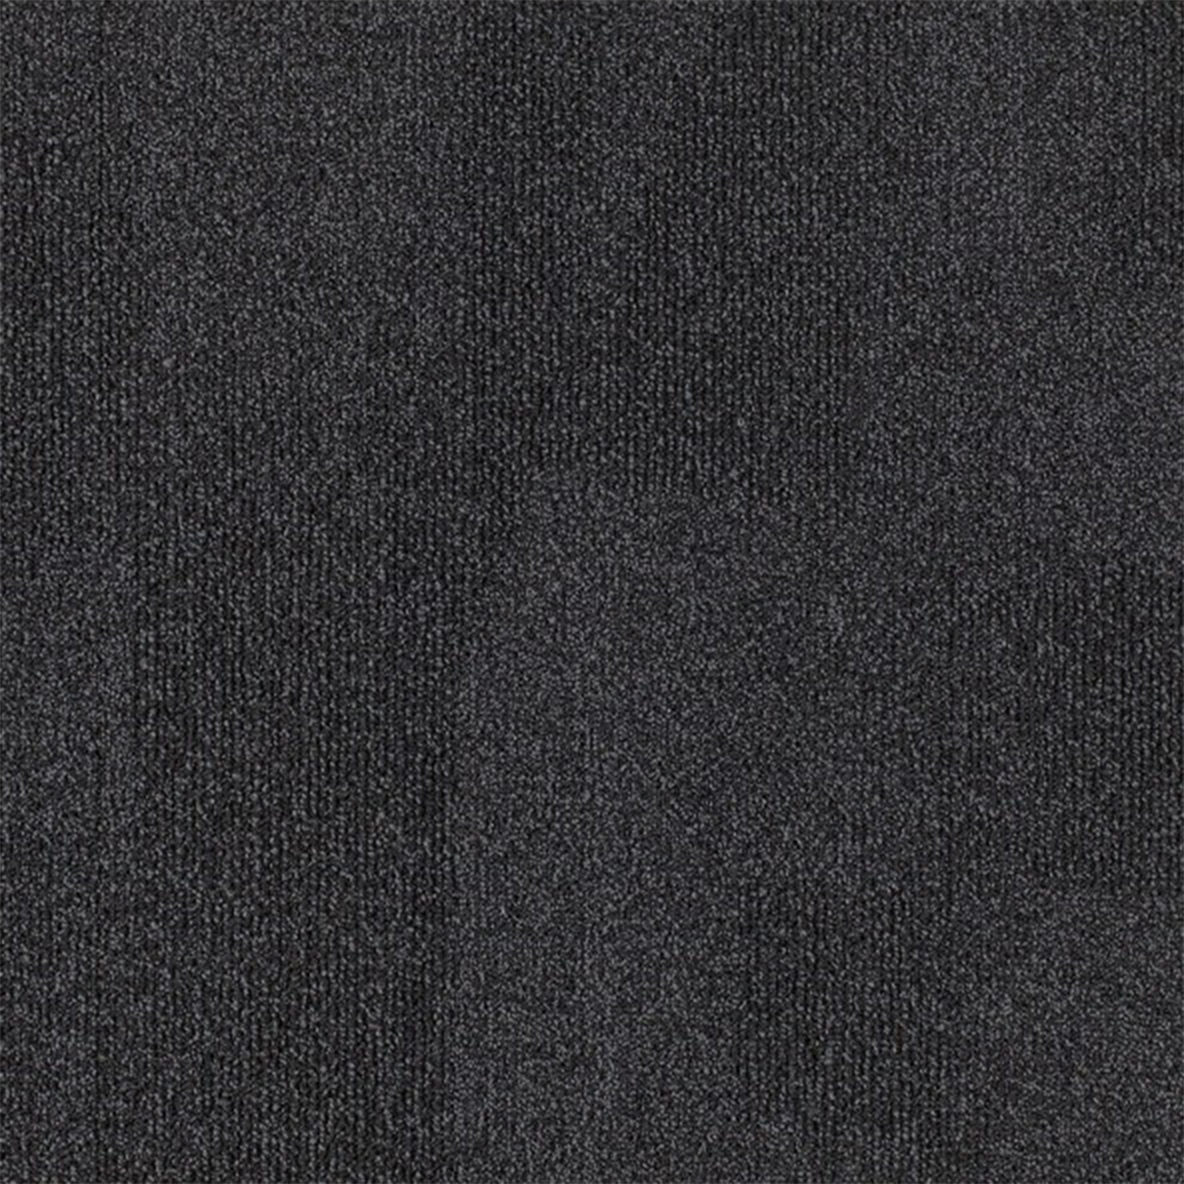 Replicate Commercial Carpet Tile .31 Inch x 50x50 cm per Tile Shadow color close up